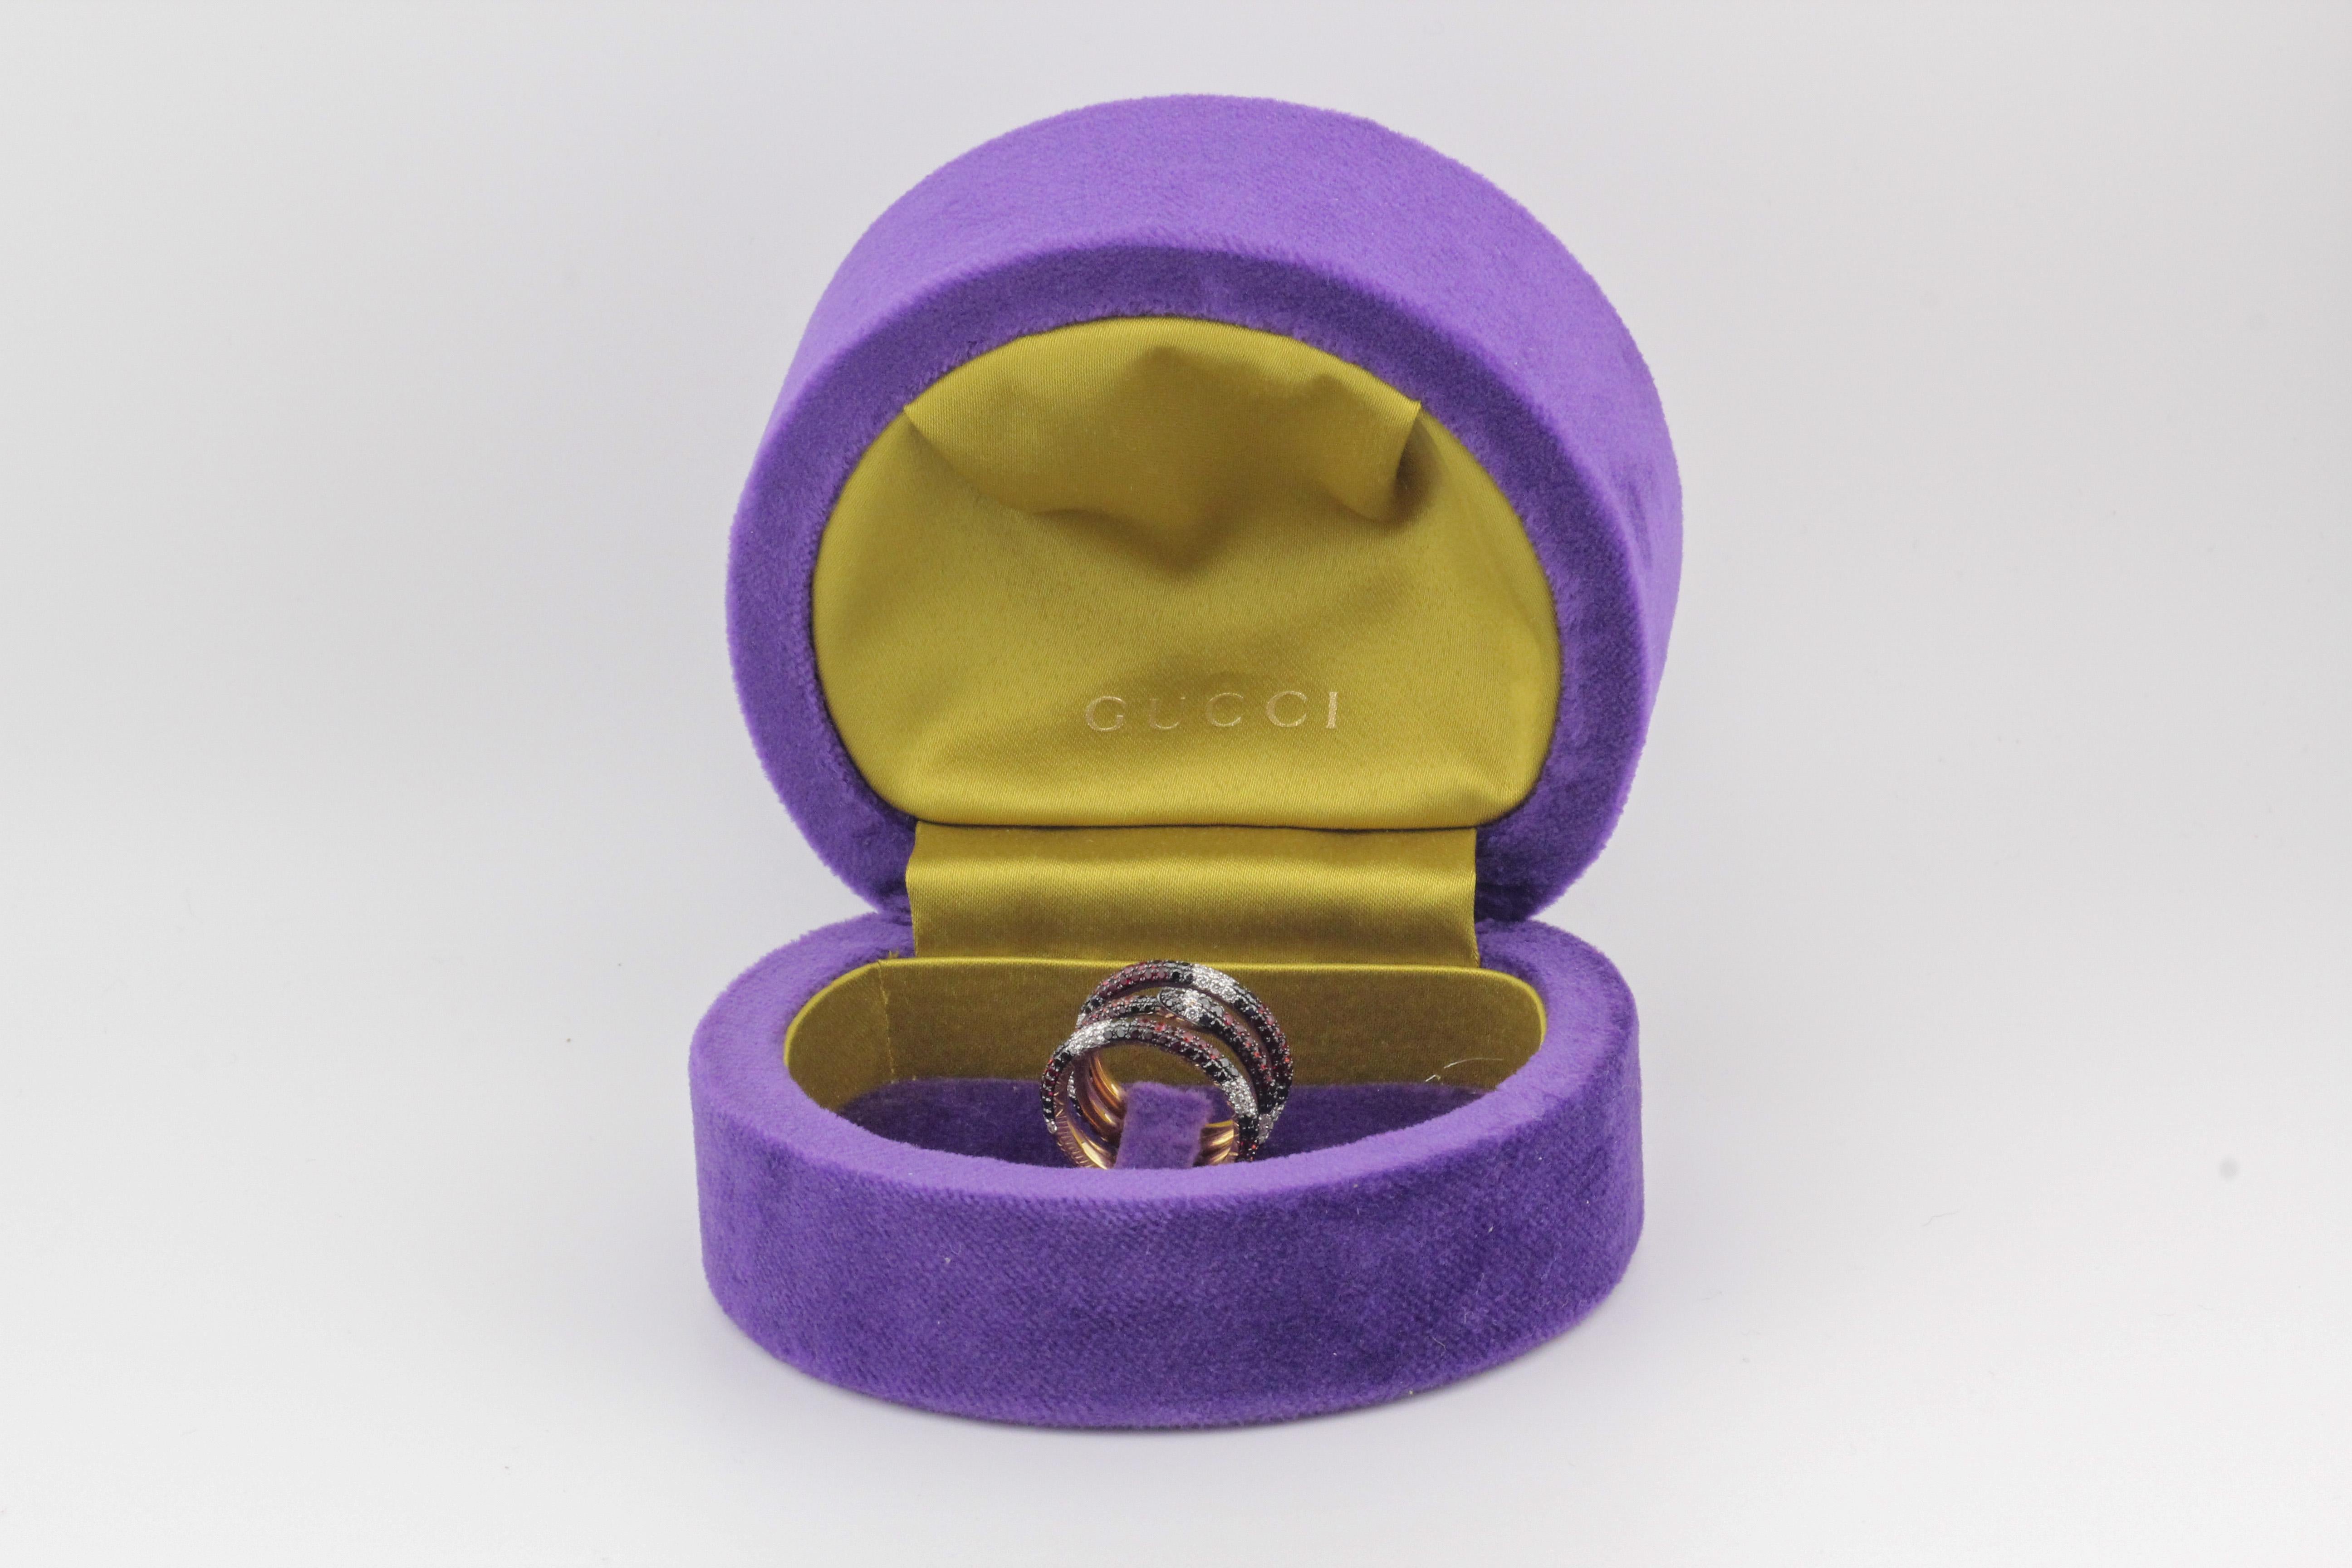 Tauchen Sie ein in die bezaubernde Welt von Gucci mit dem Ouroboros Edelstein 18k Gelbgold Kingsnake Three-Band Ring, ein spektakuläres Stück, das über konventionellen Schmuck hinausgeht und Symbolik, Opulenz und meisterhafte Handwerkskunst